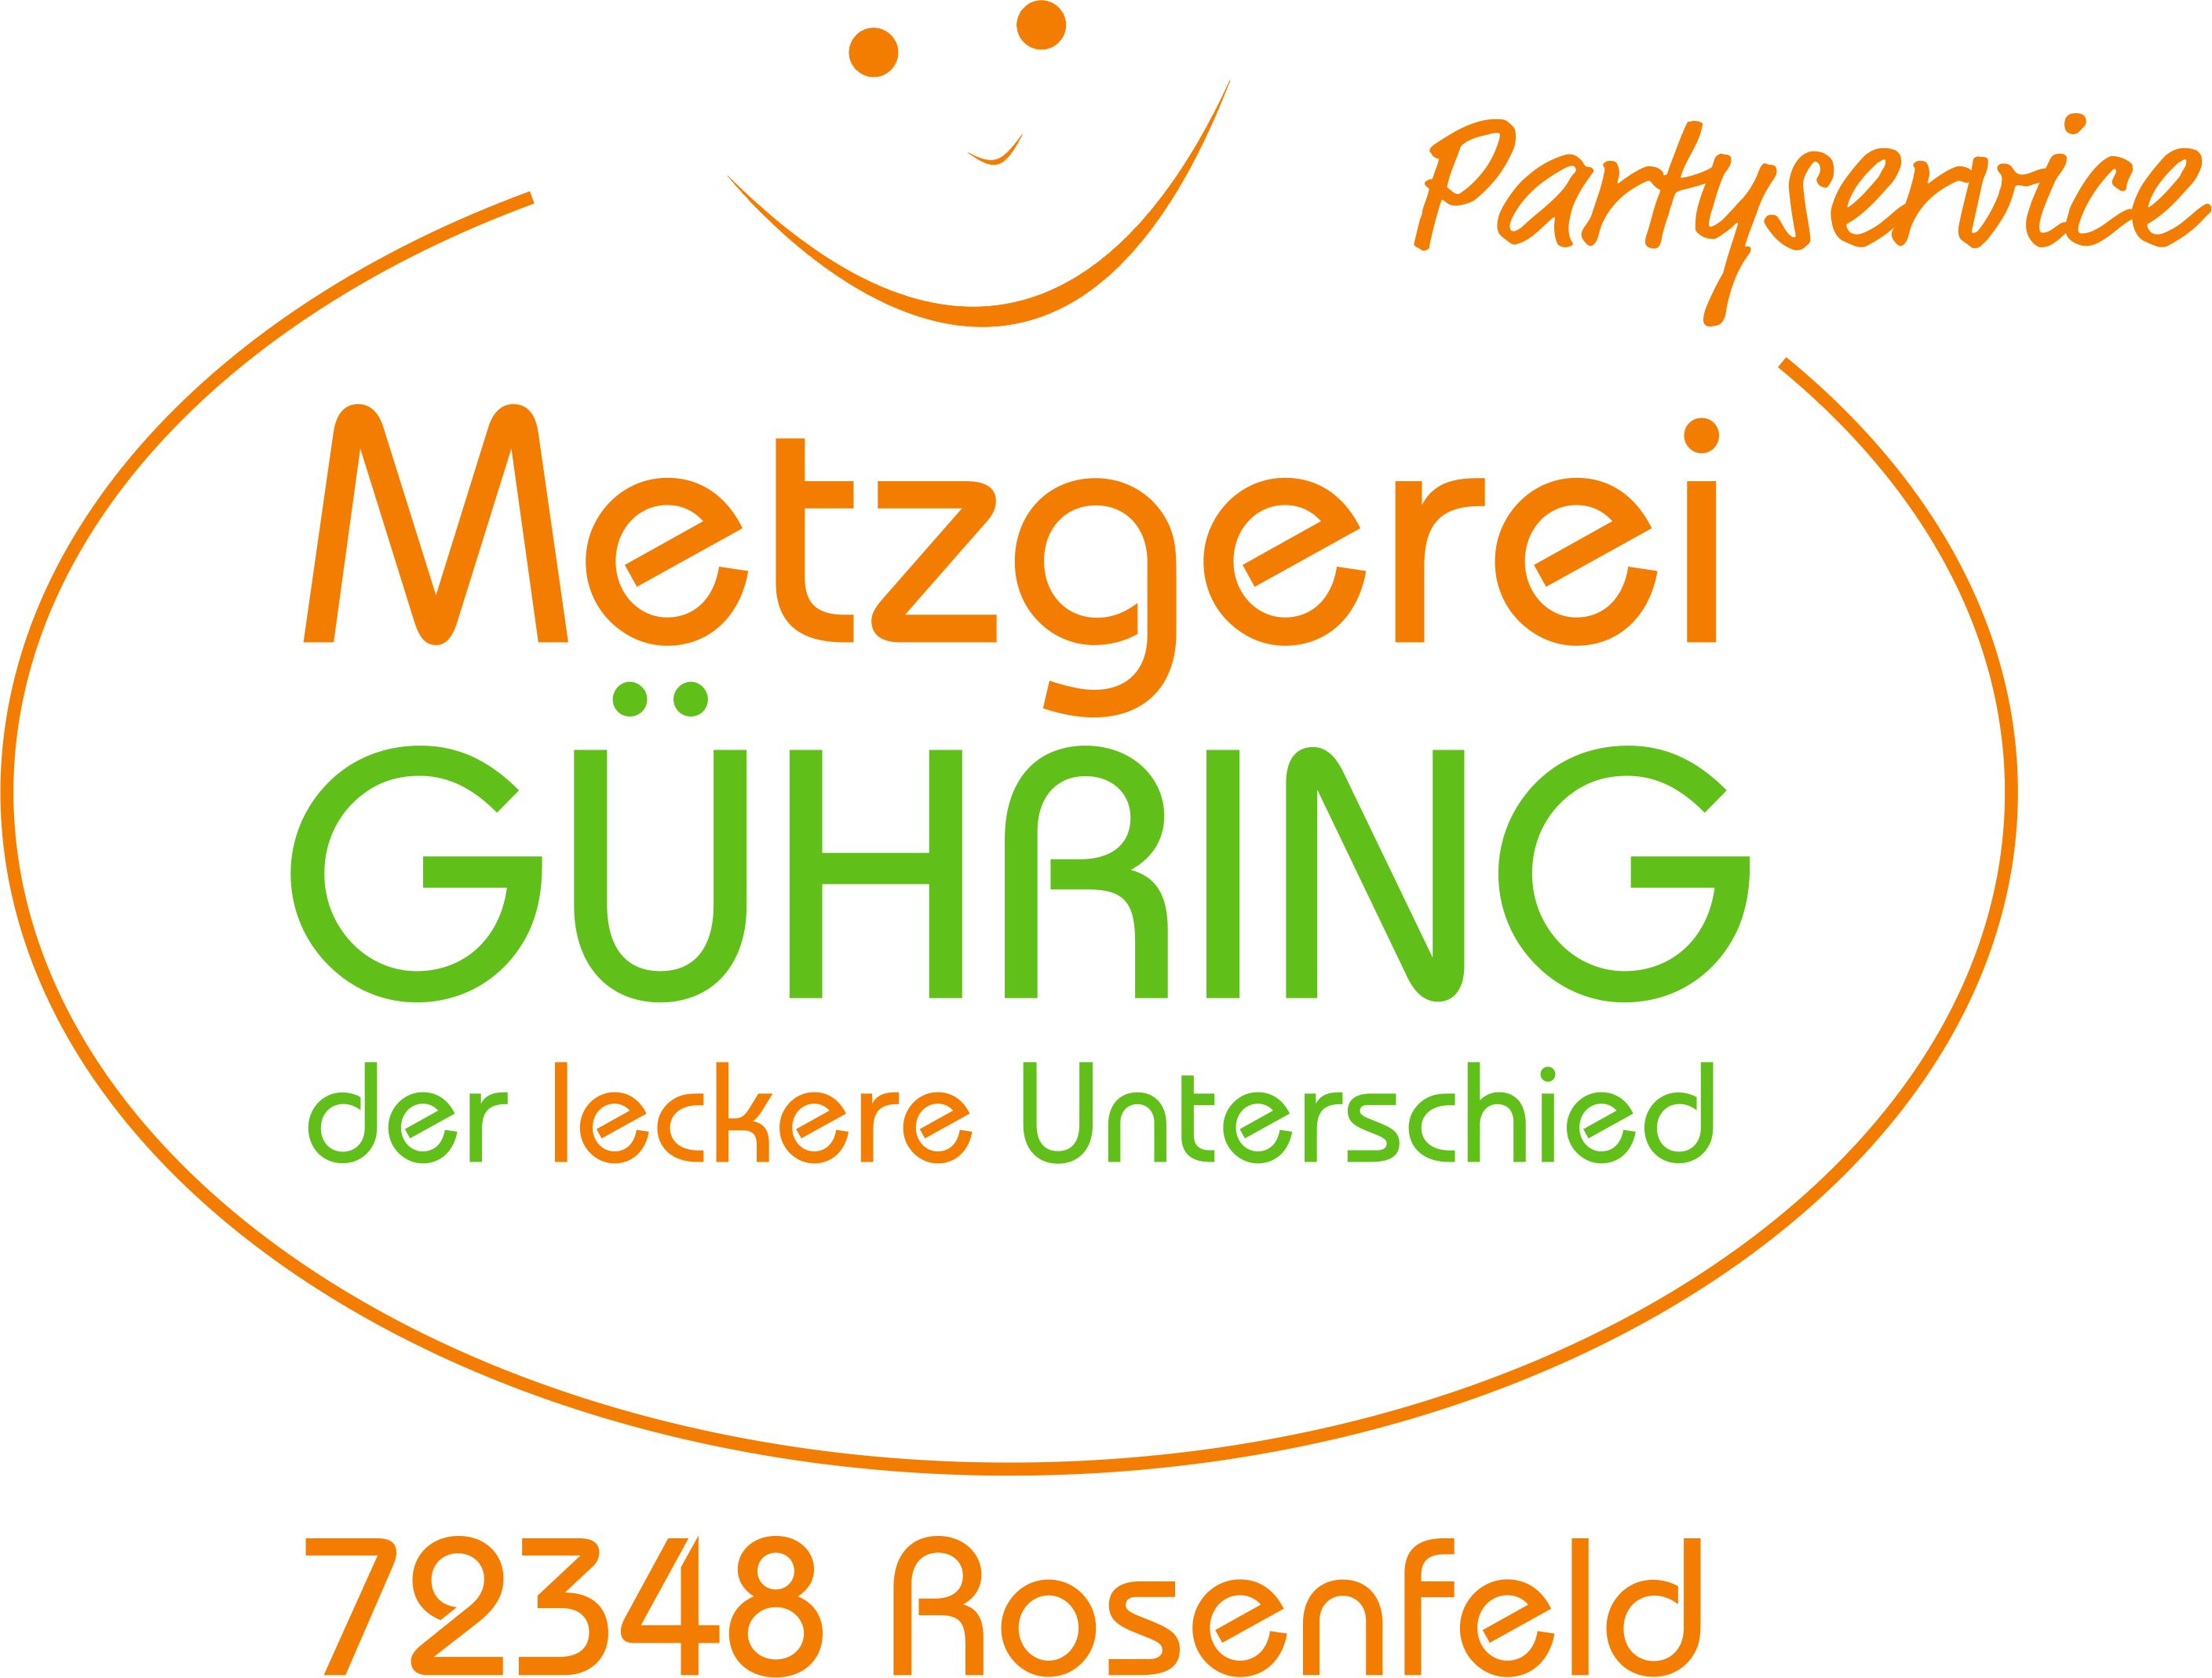 Metzgerei Guehring